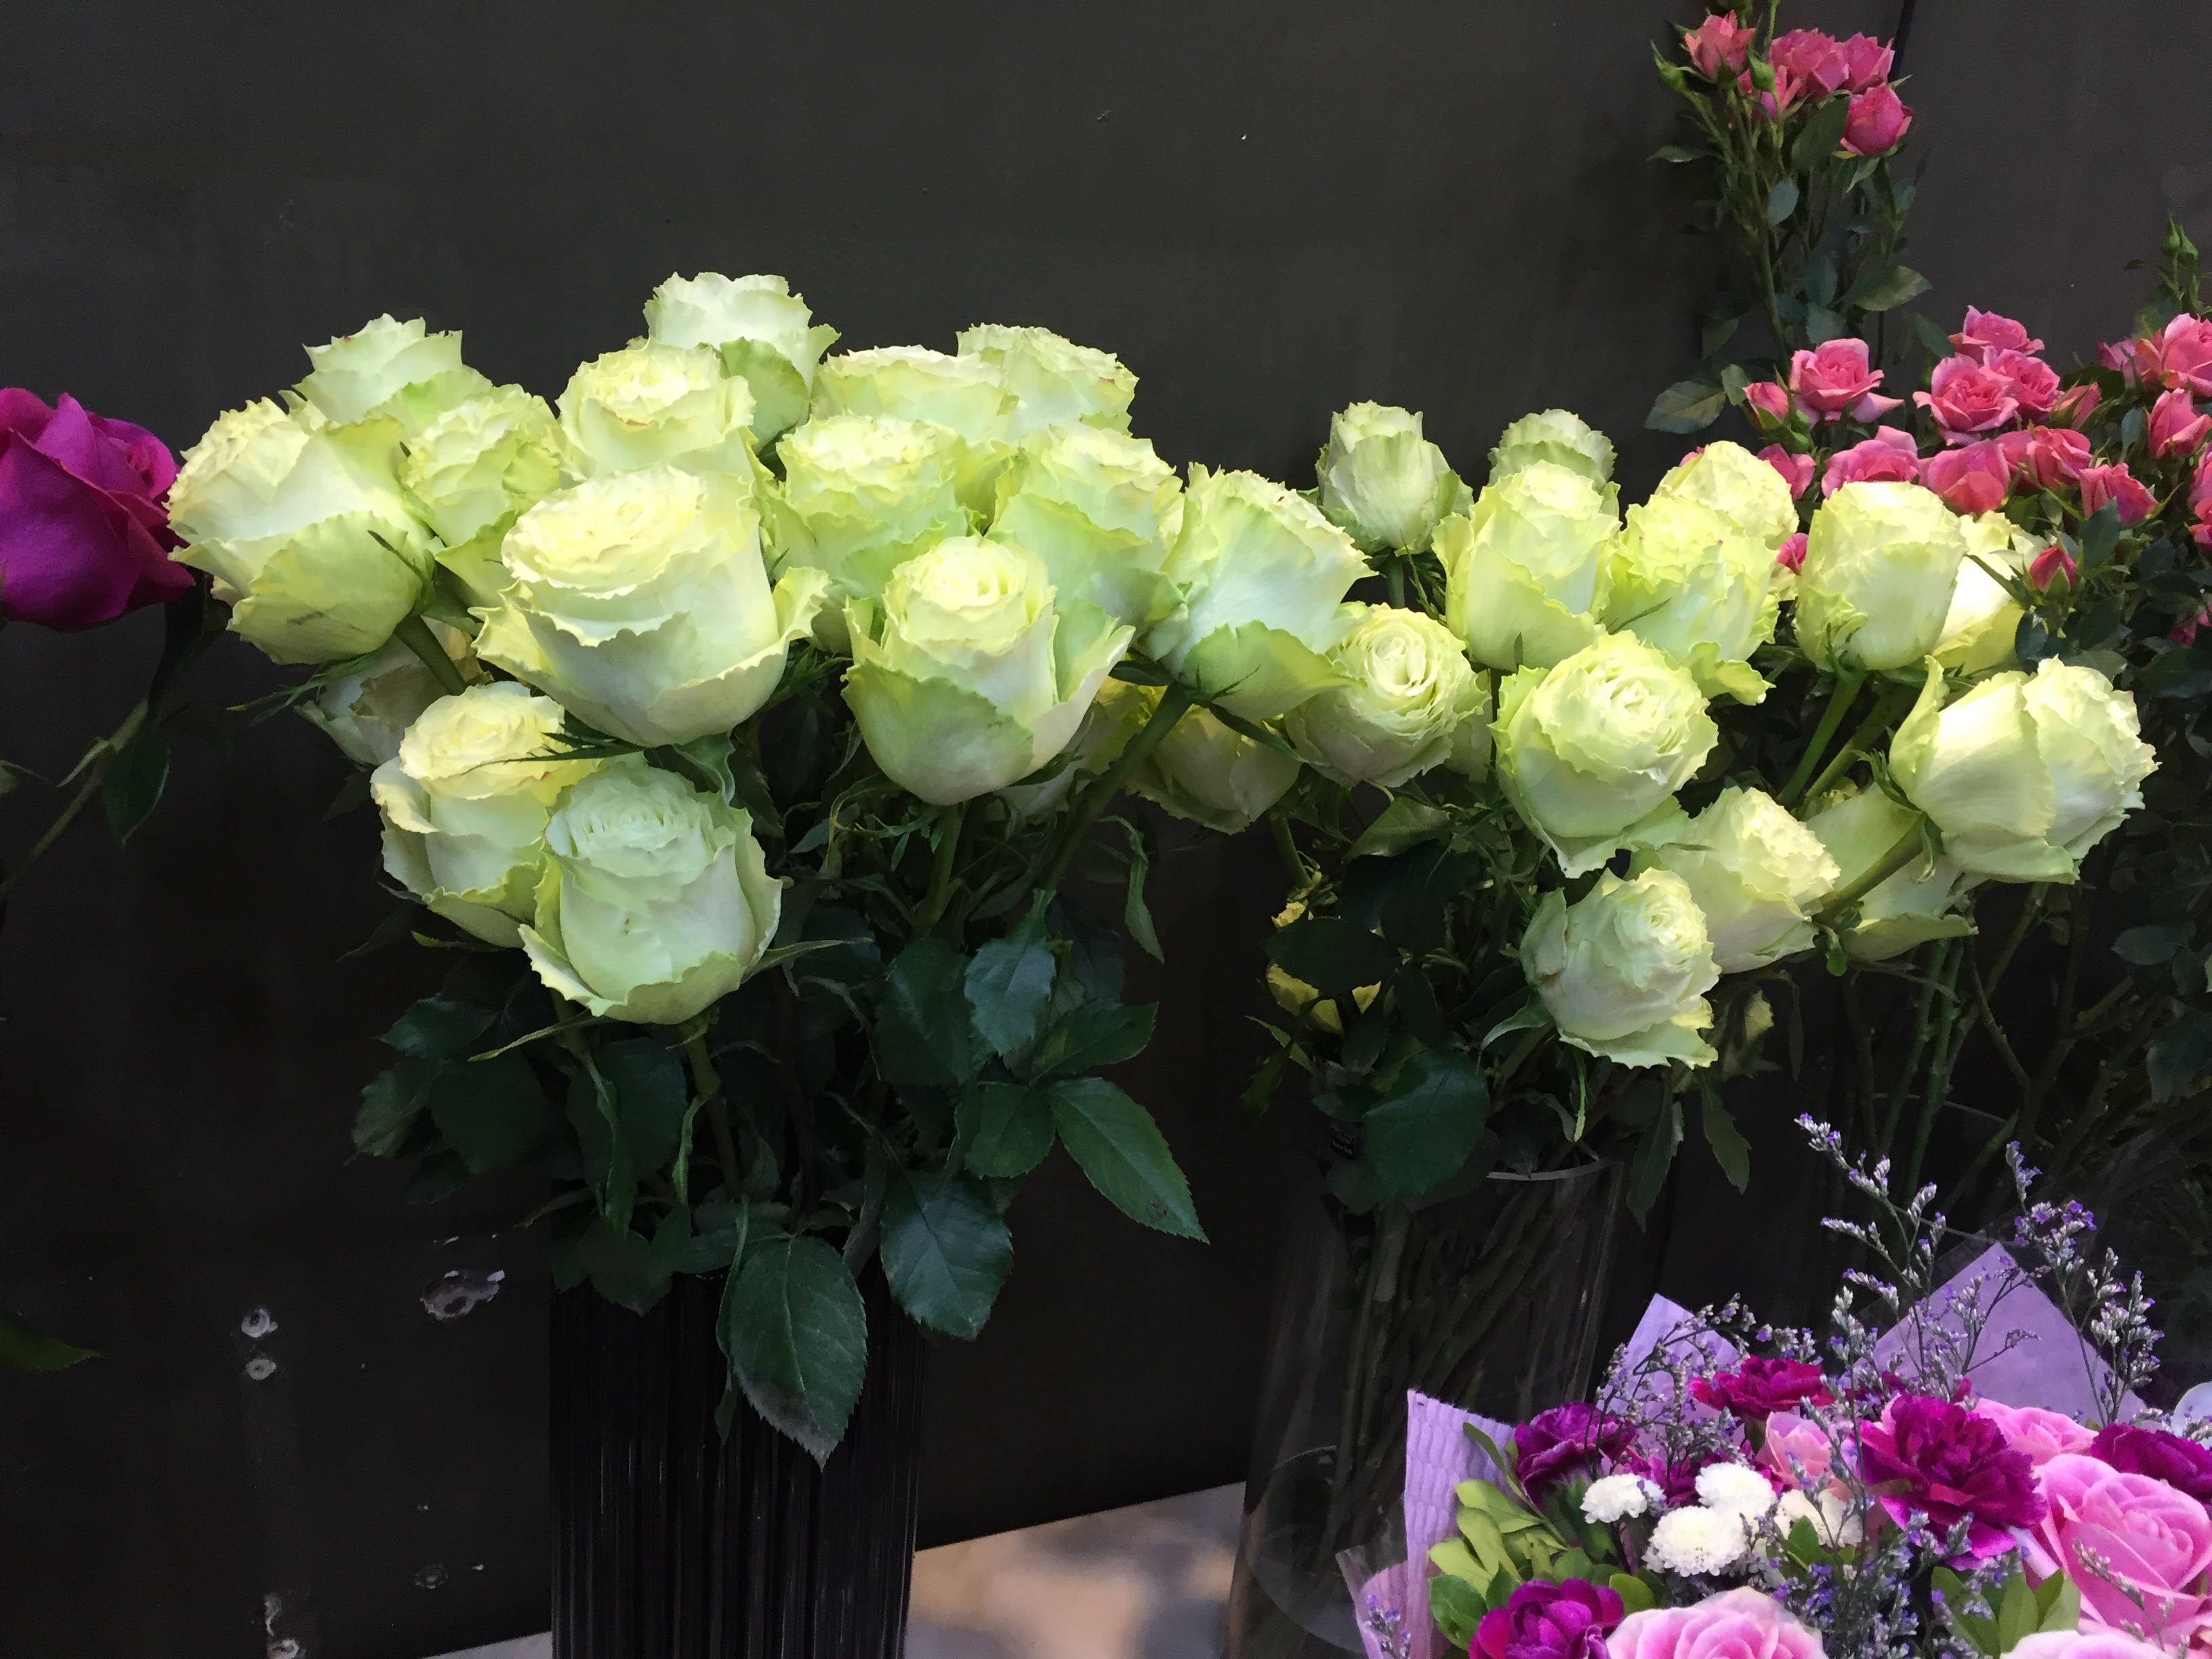 Tuy nhiên, giá cả của hoa hồng Ecuador lại khá đắt lên tới 250 đồng/bông